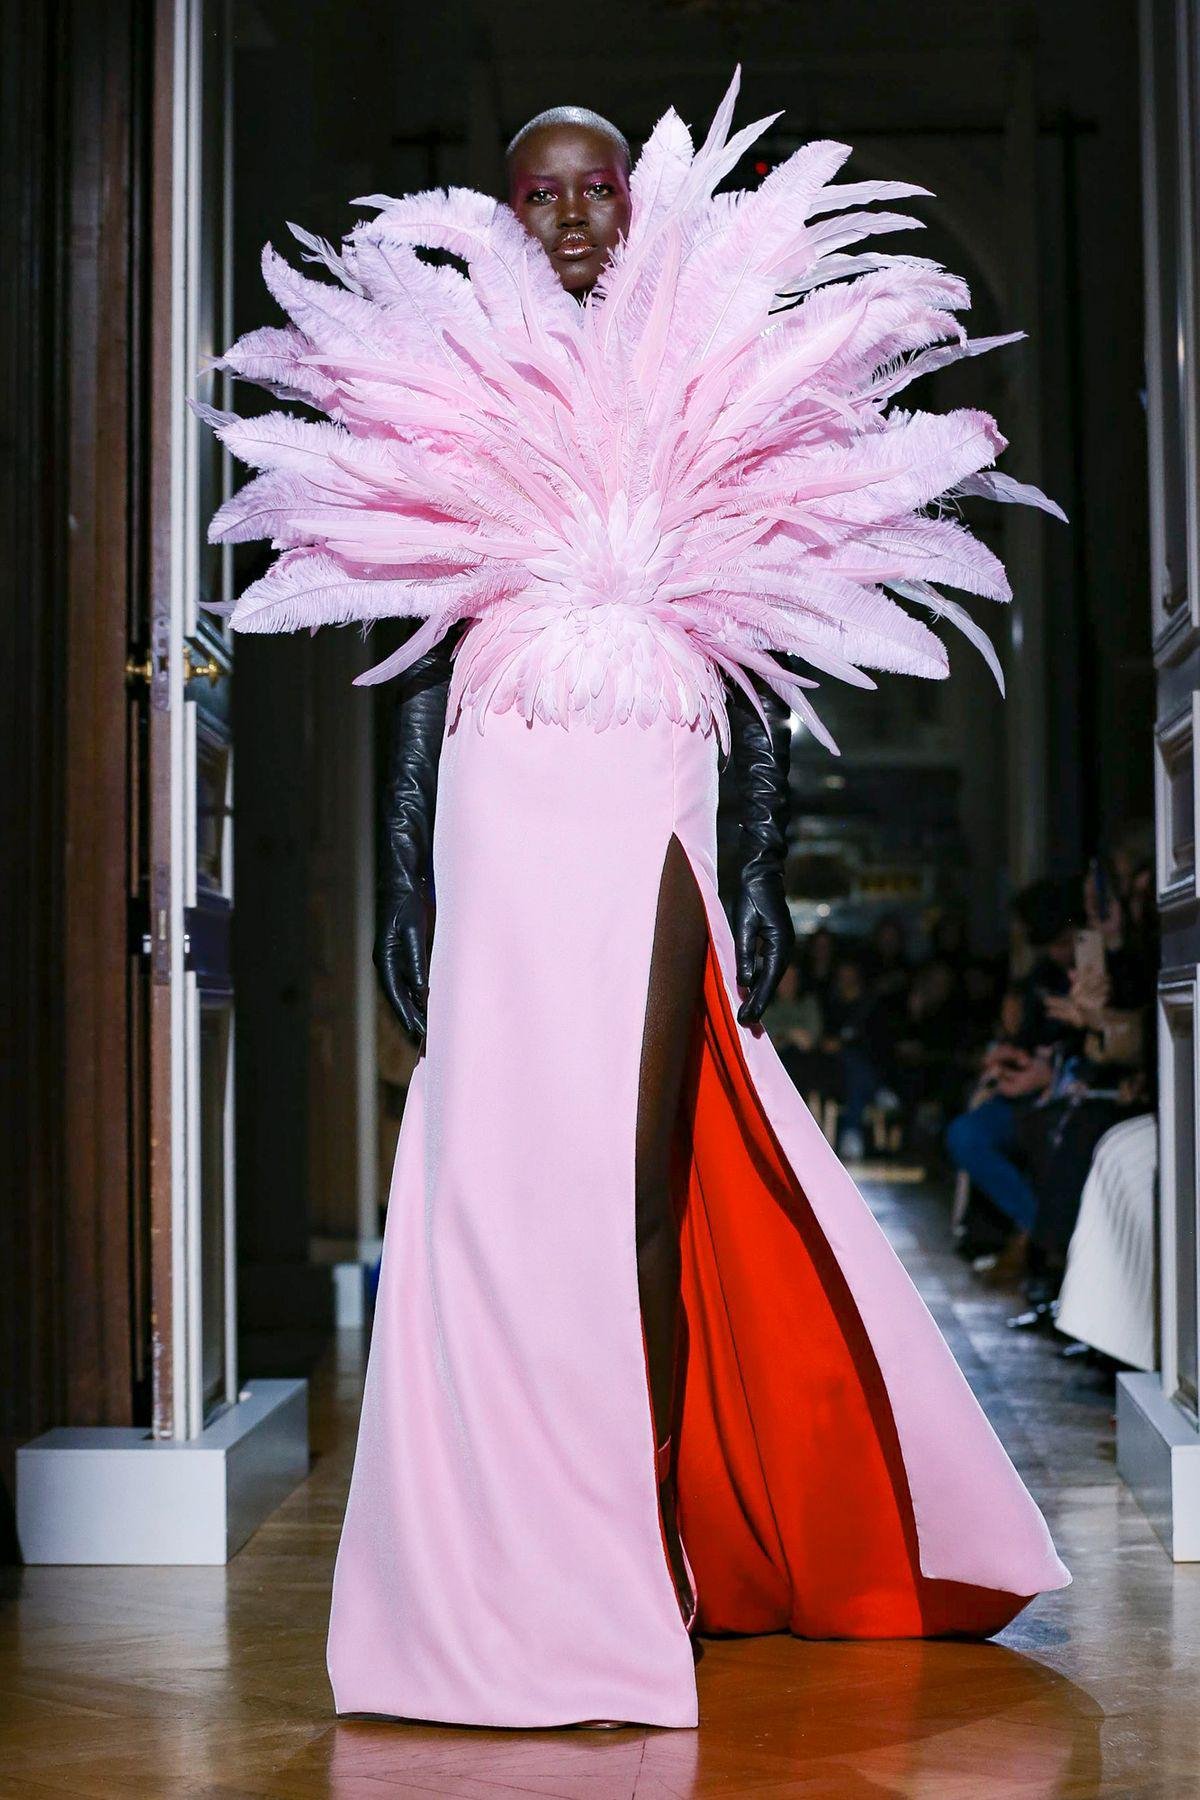 مجموعة فالنتيتو للخياطة الراقية لربيع 2020 أسبوع الموضة الباريسي تصاميم نسائية أزياء نسائية